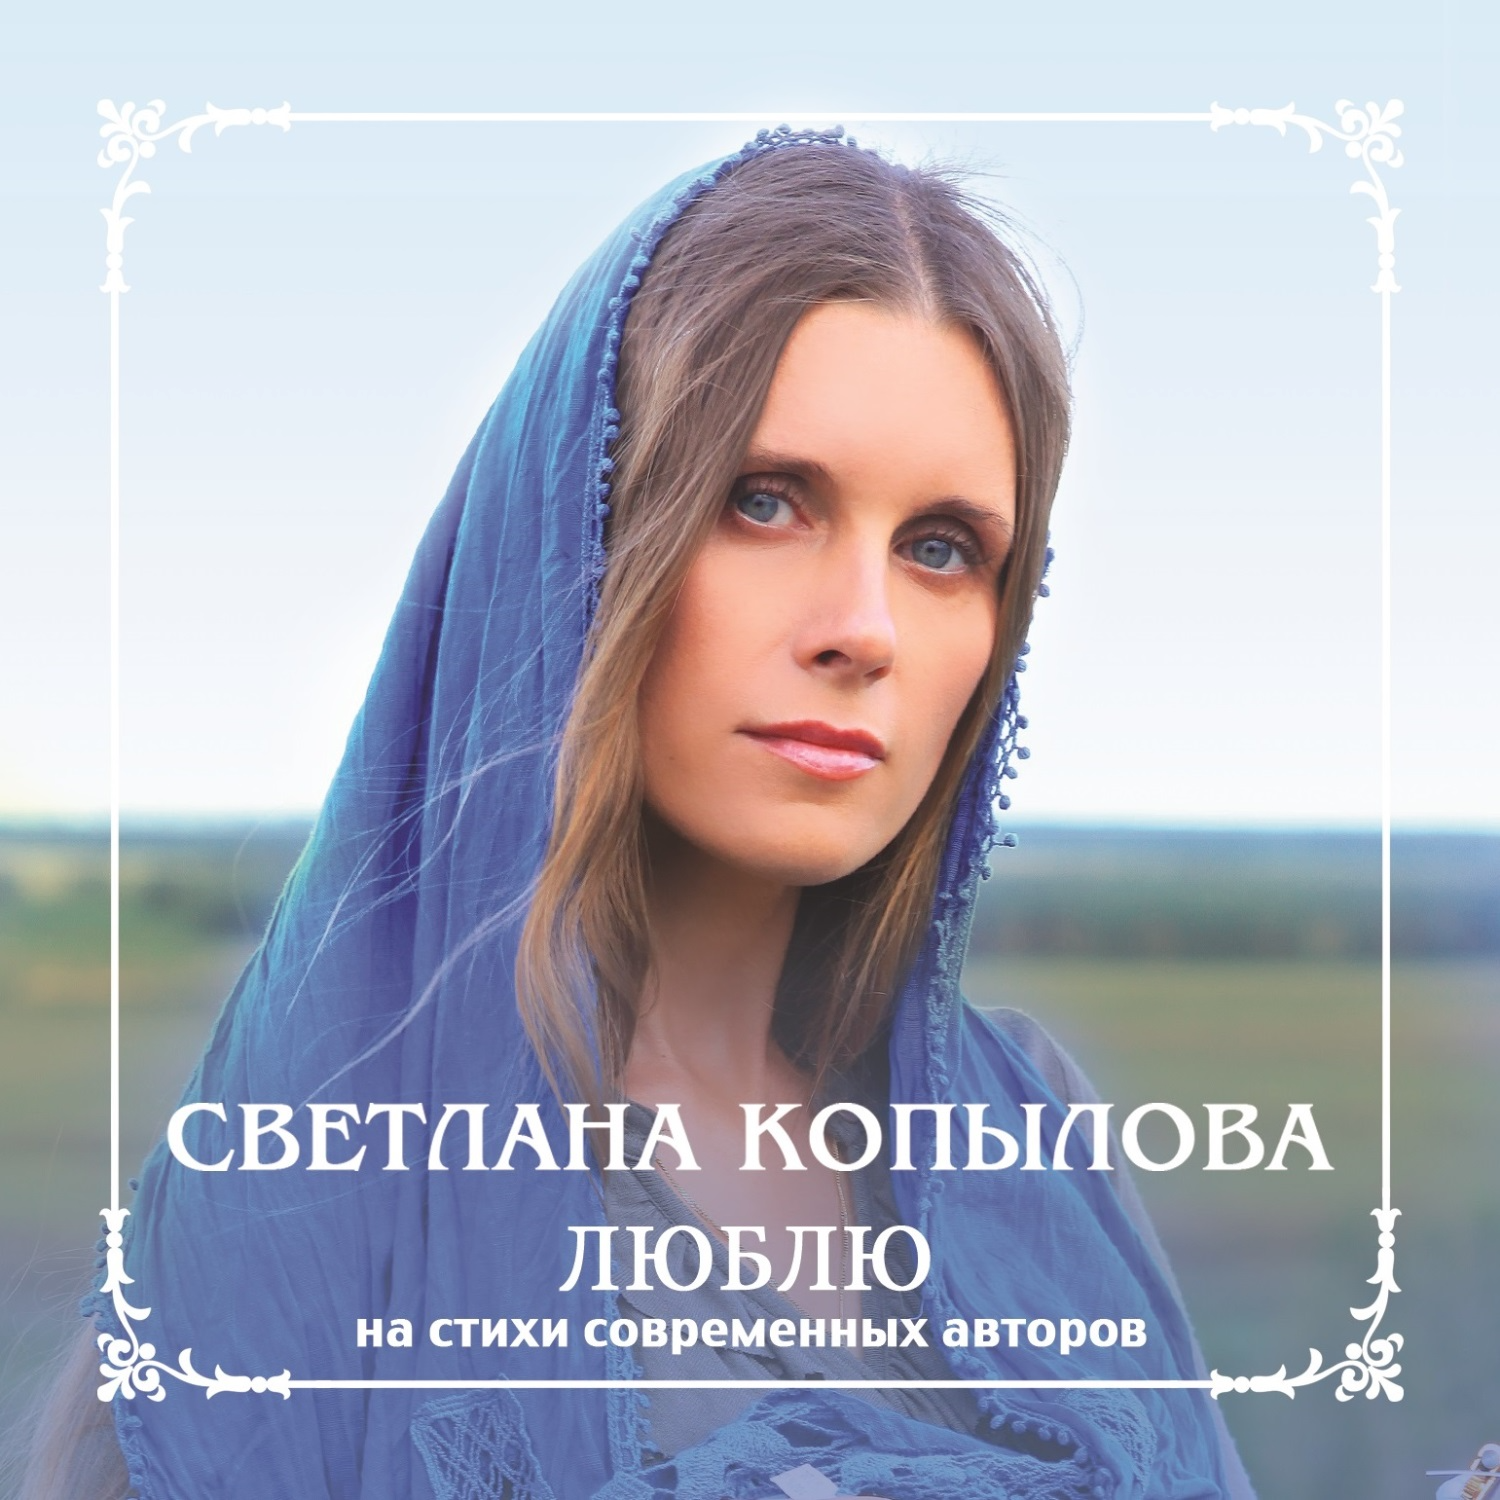 Русские божественные песни